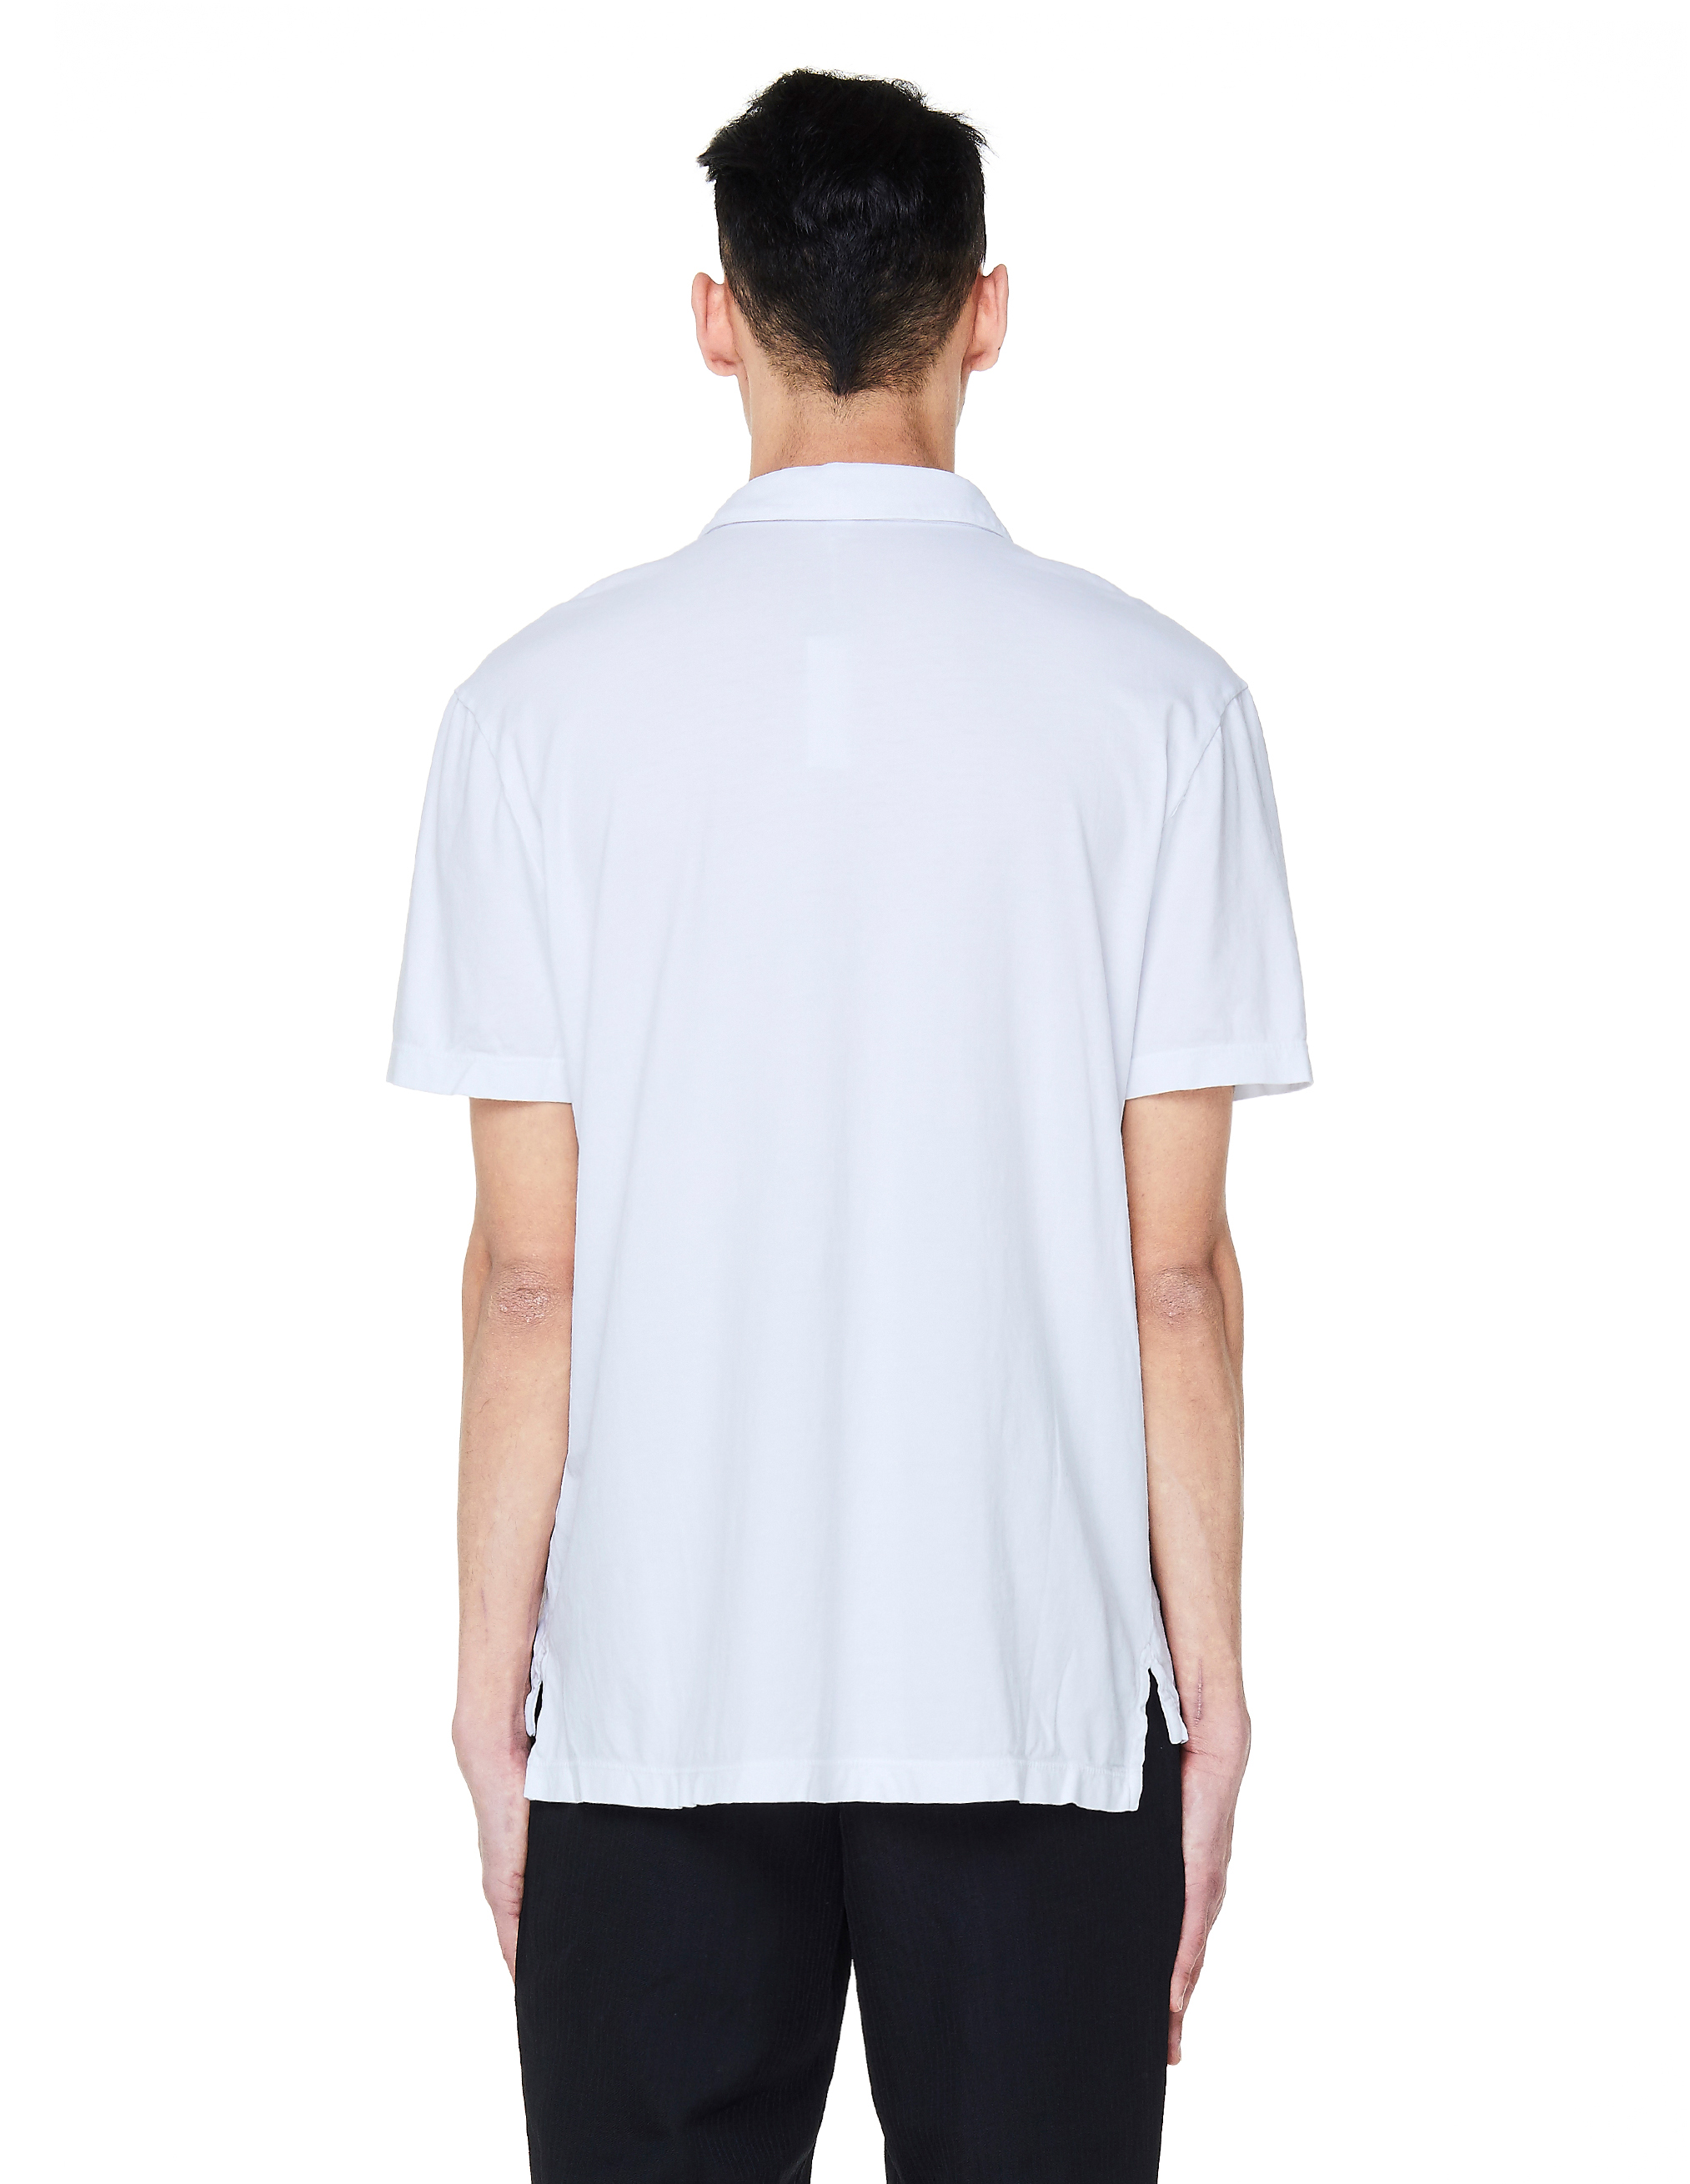 Белая хлопковая футболка-поло MSX3337/wht Фото 3